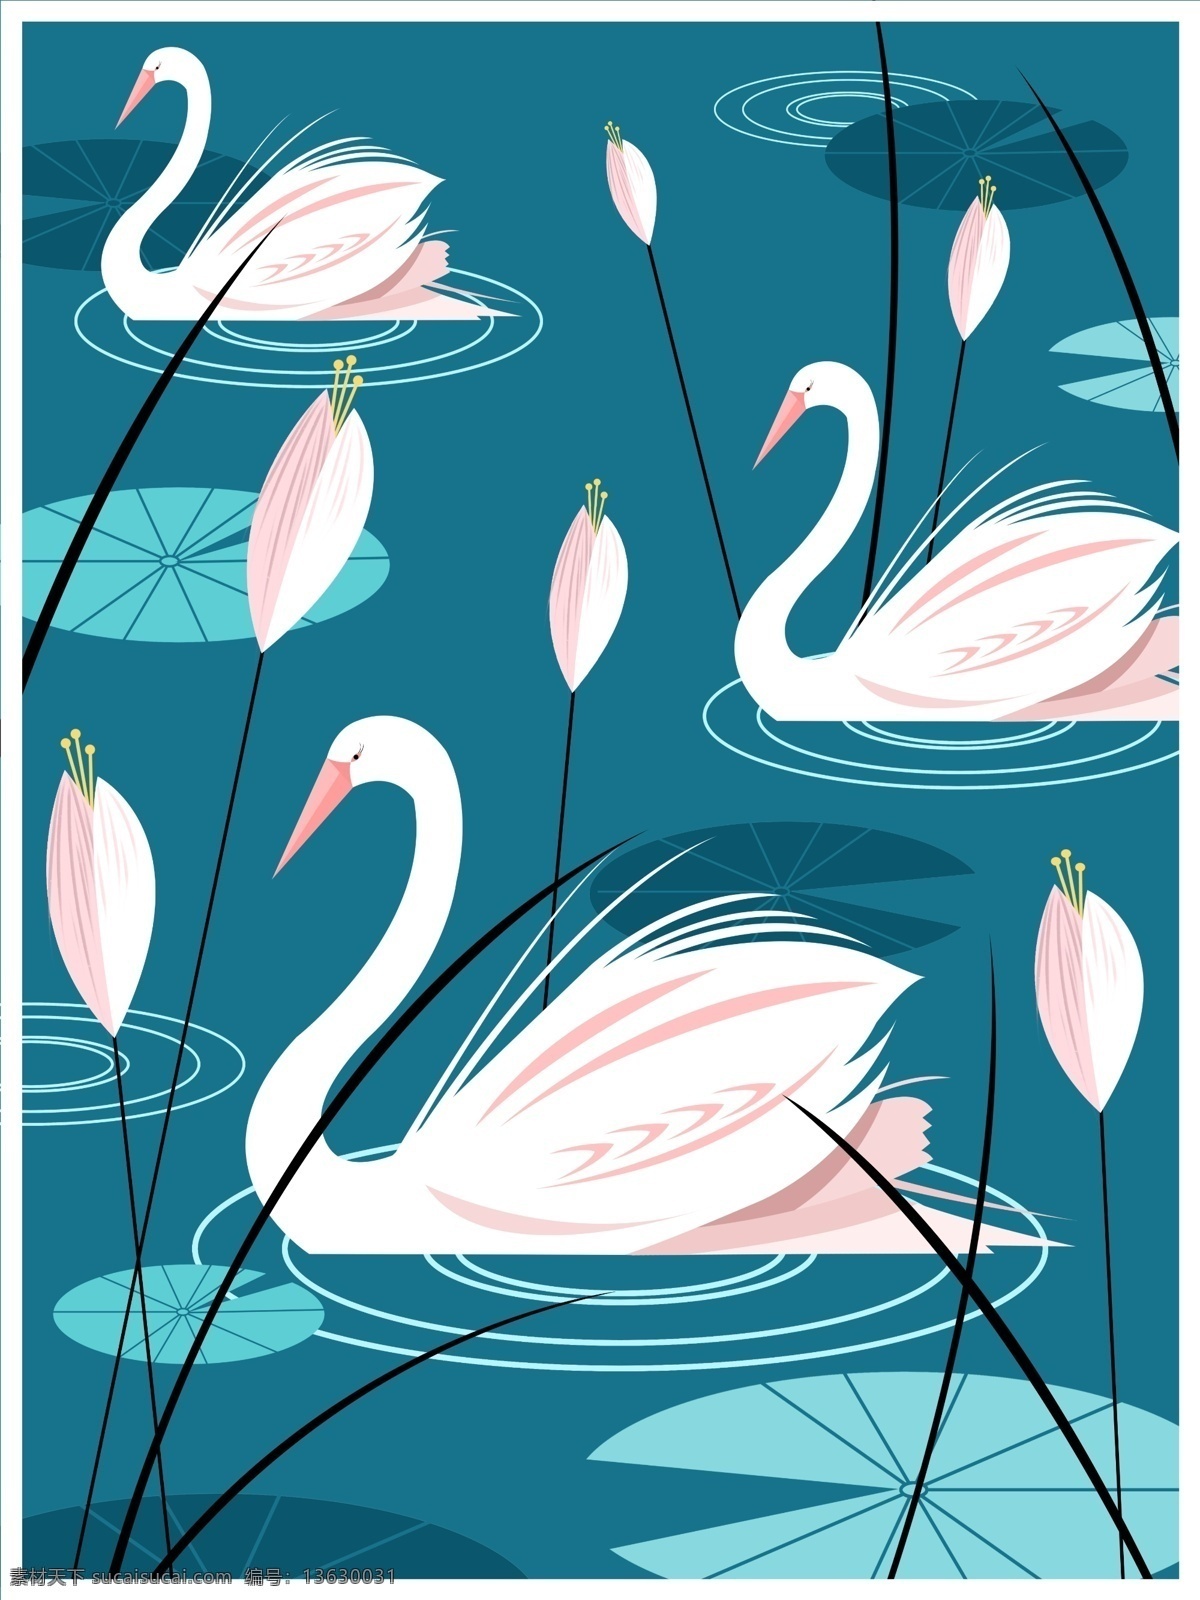 自然 印记 插画 湖中 天鹅 荷叶 草 蓝色 清新 壁纸 自然印记 湖 花 湖水 波纹 邮票 背景